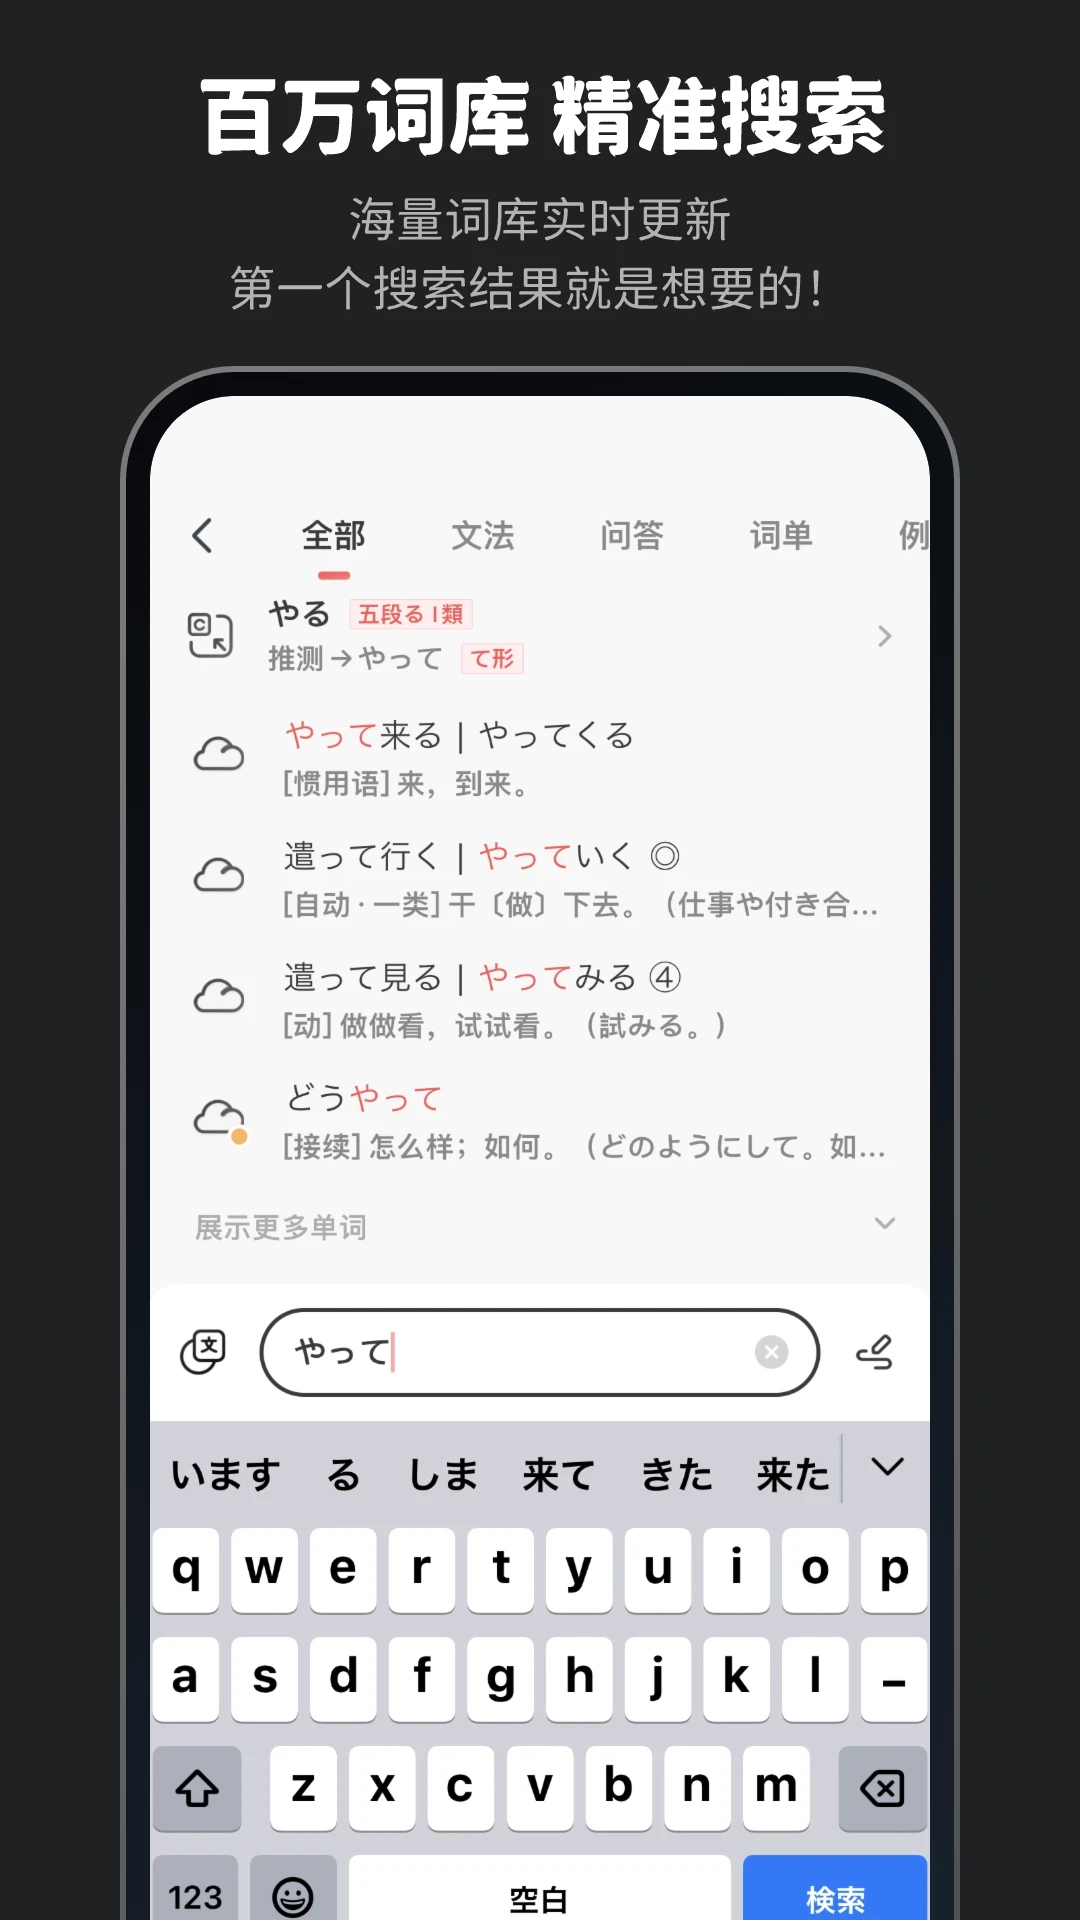 moji辞书app下载旧版本